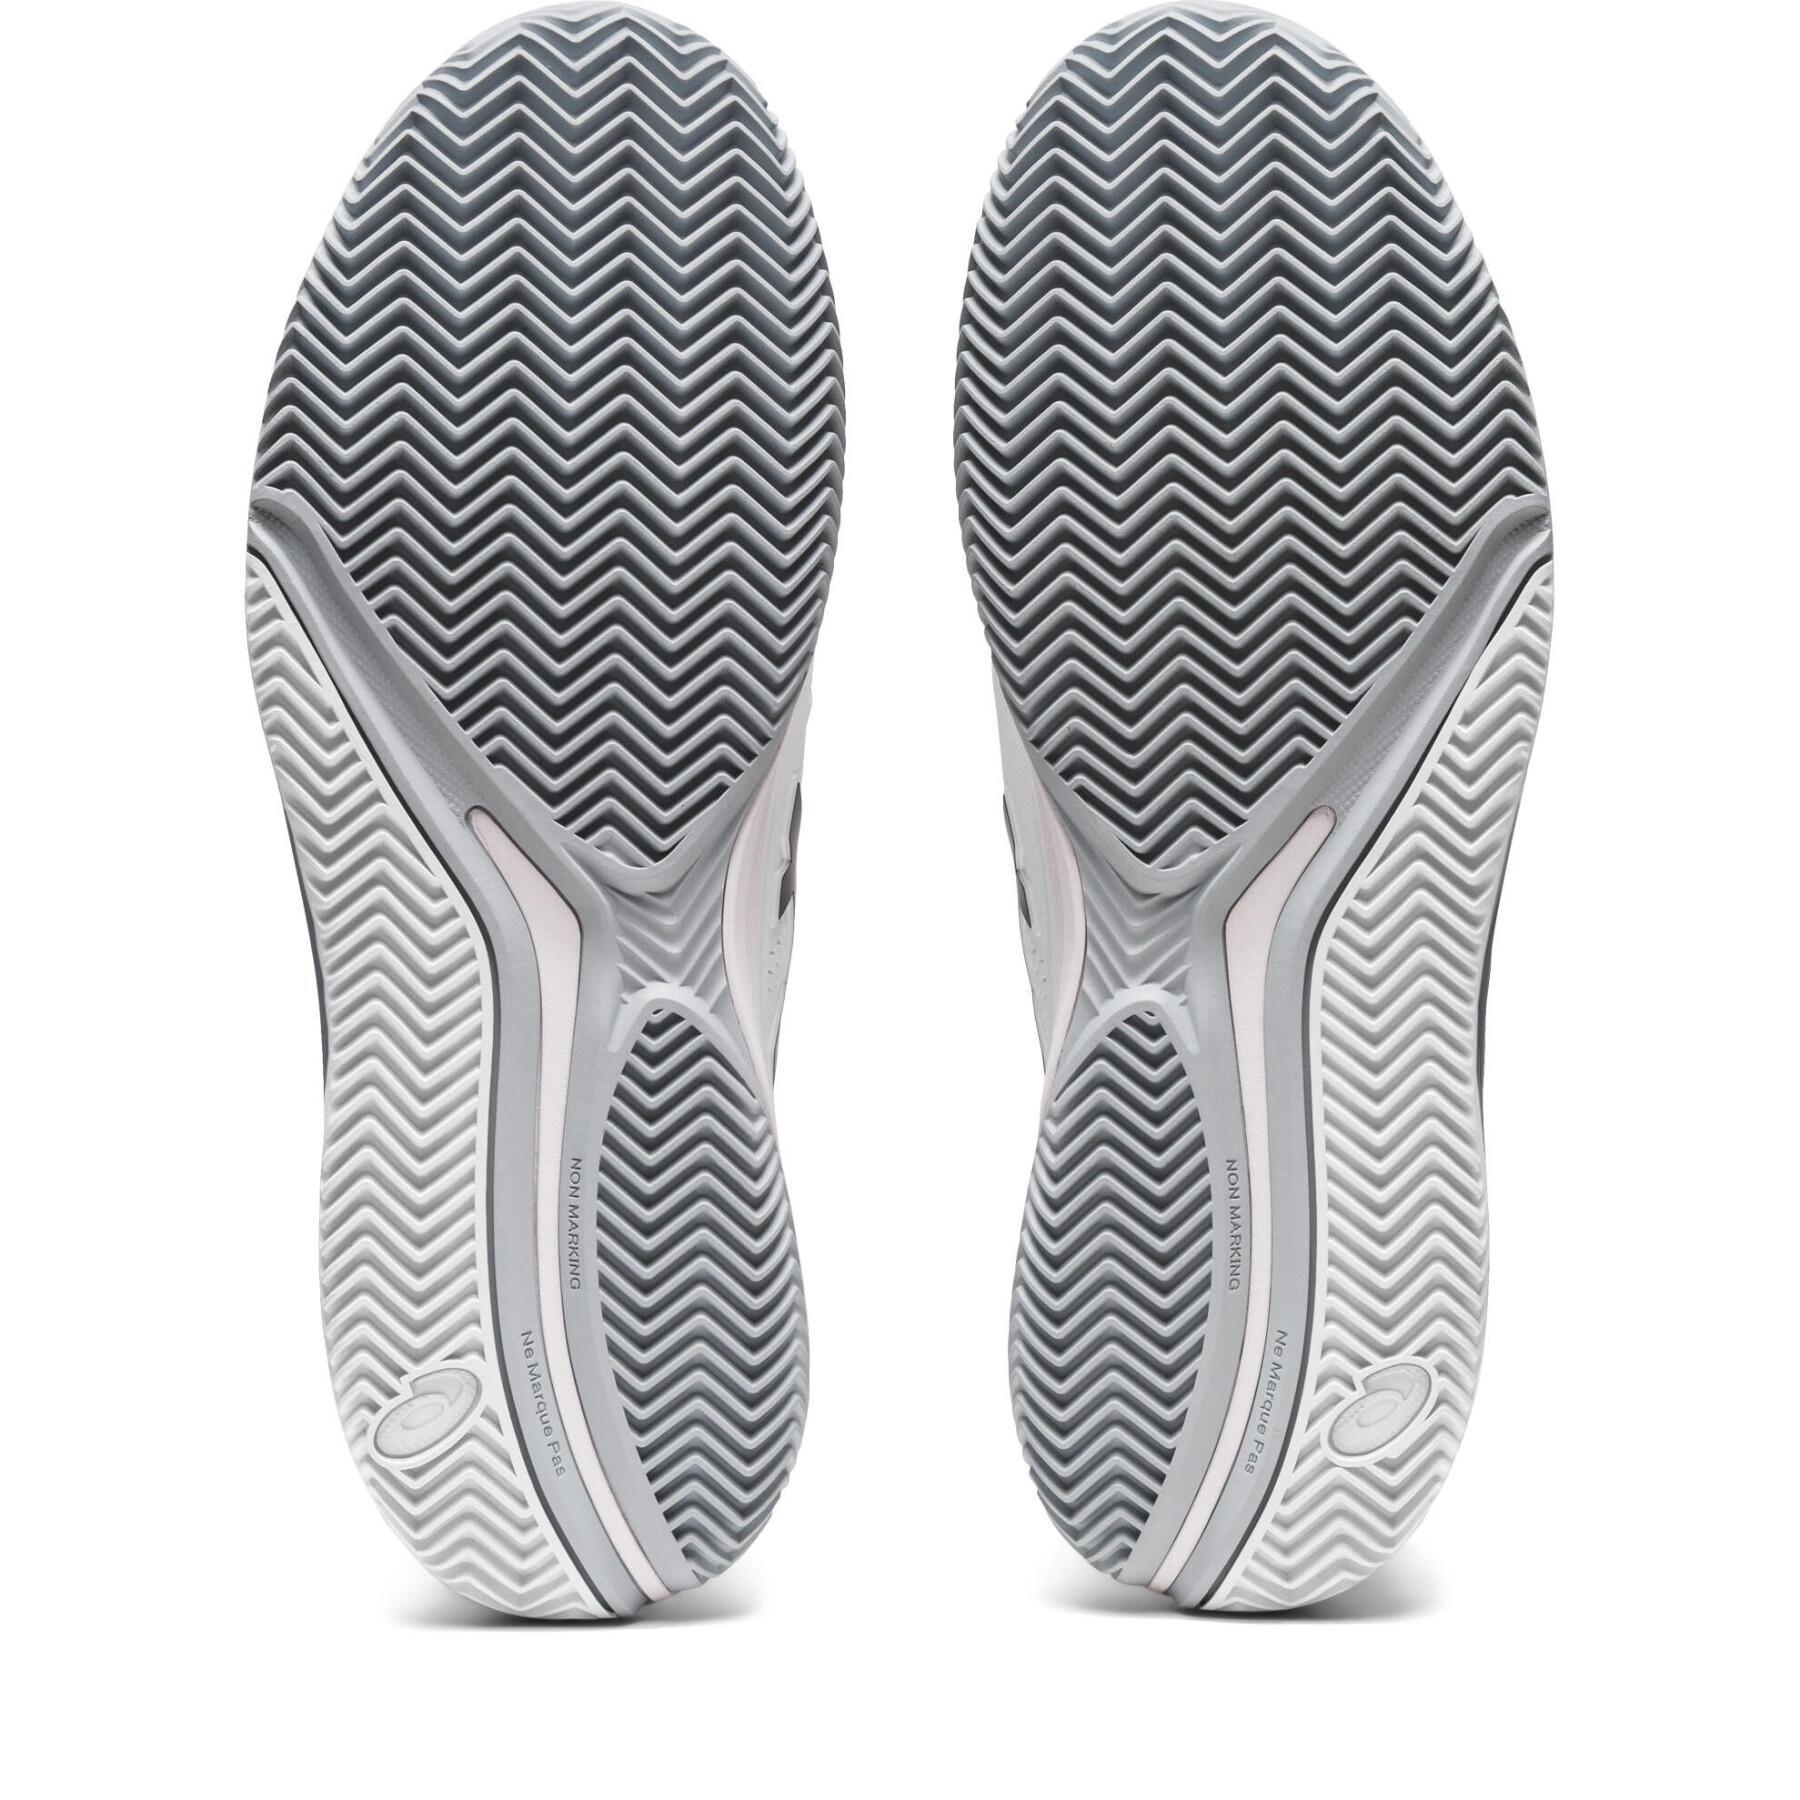 Chaussures de tennis Asics Gel-Resolution 9 Clay